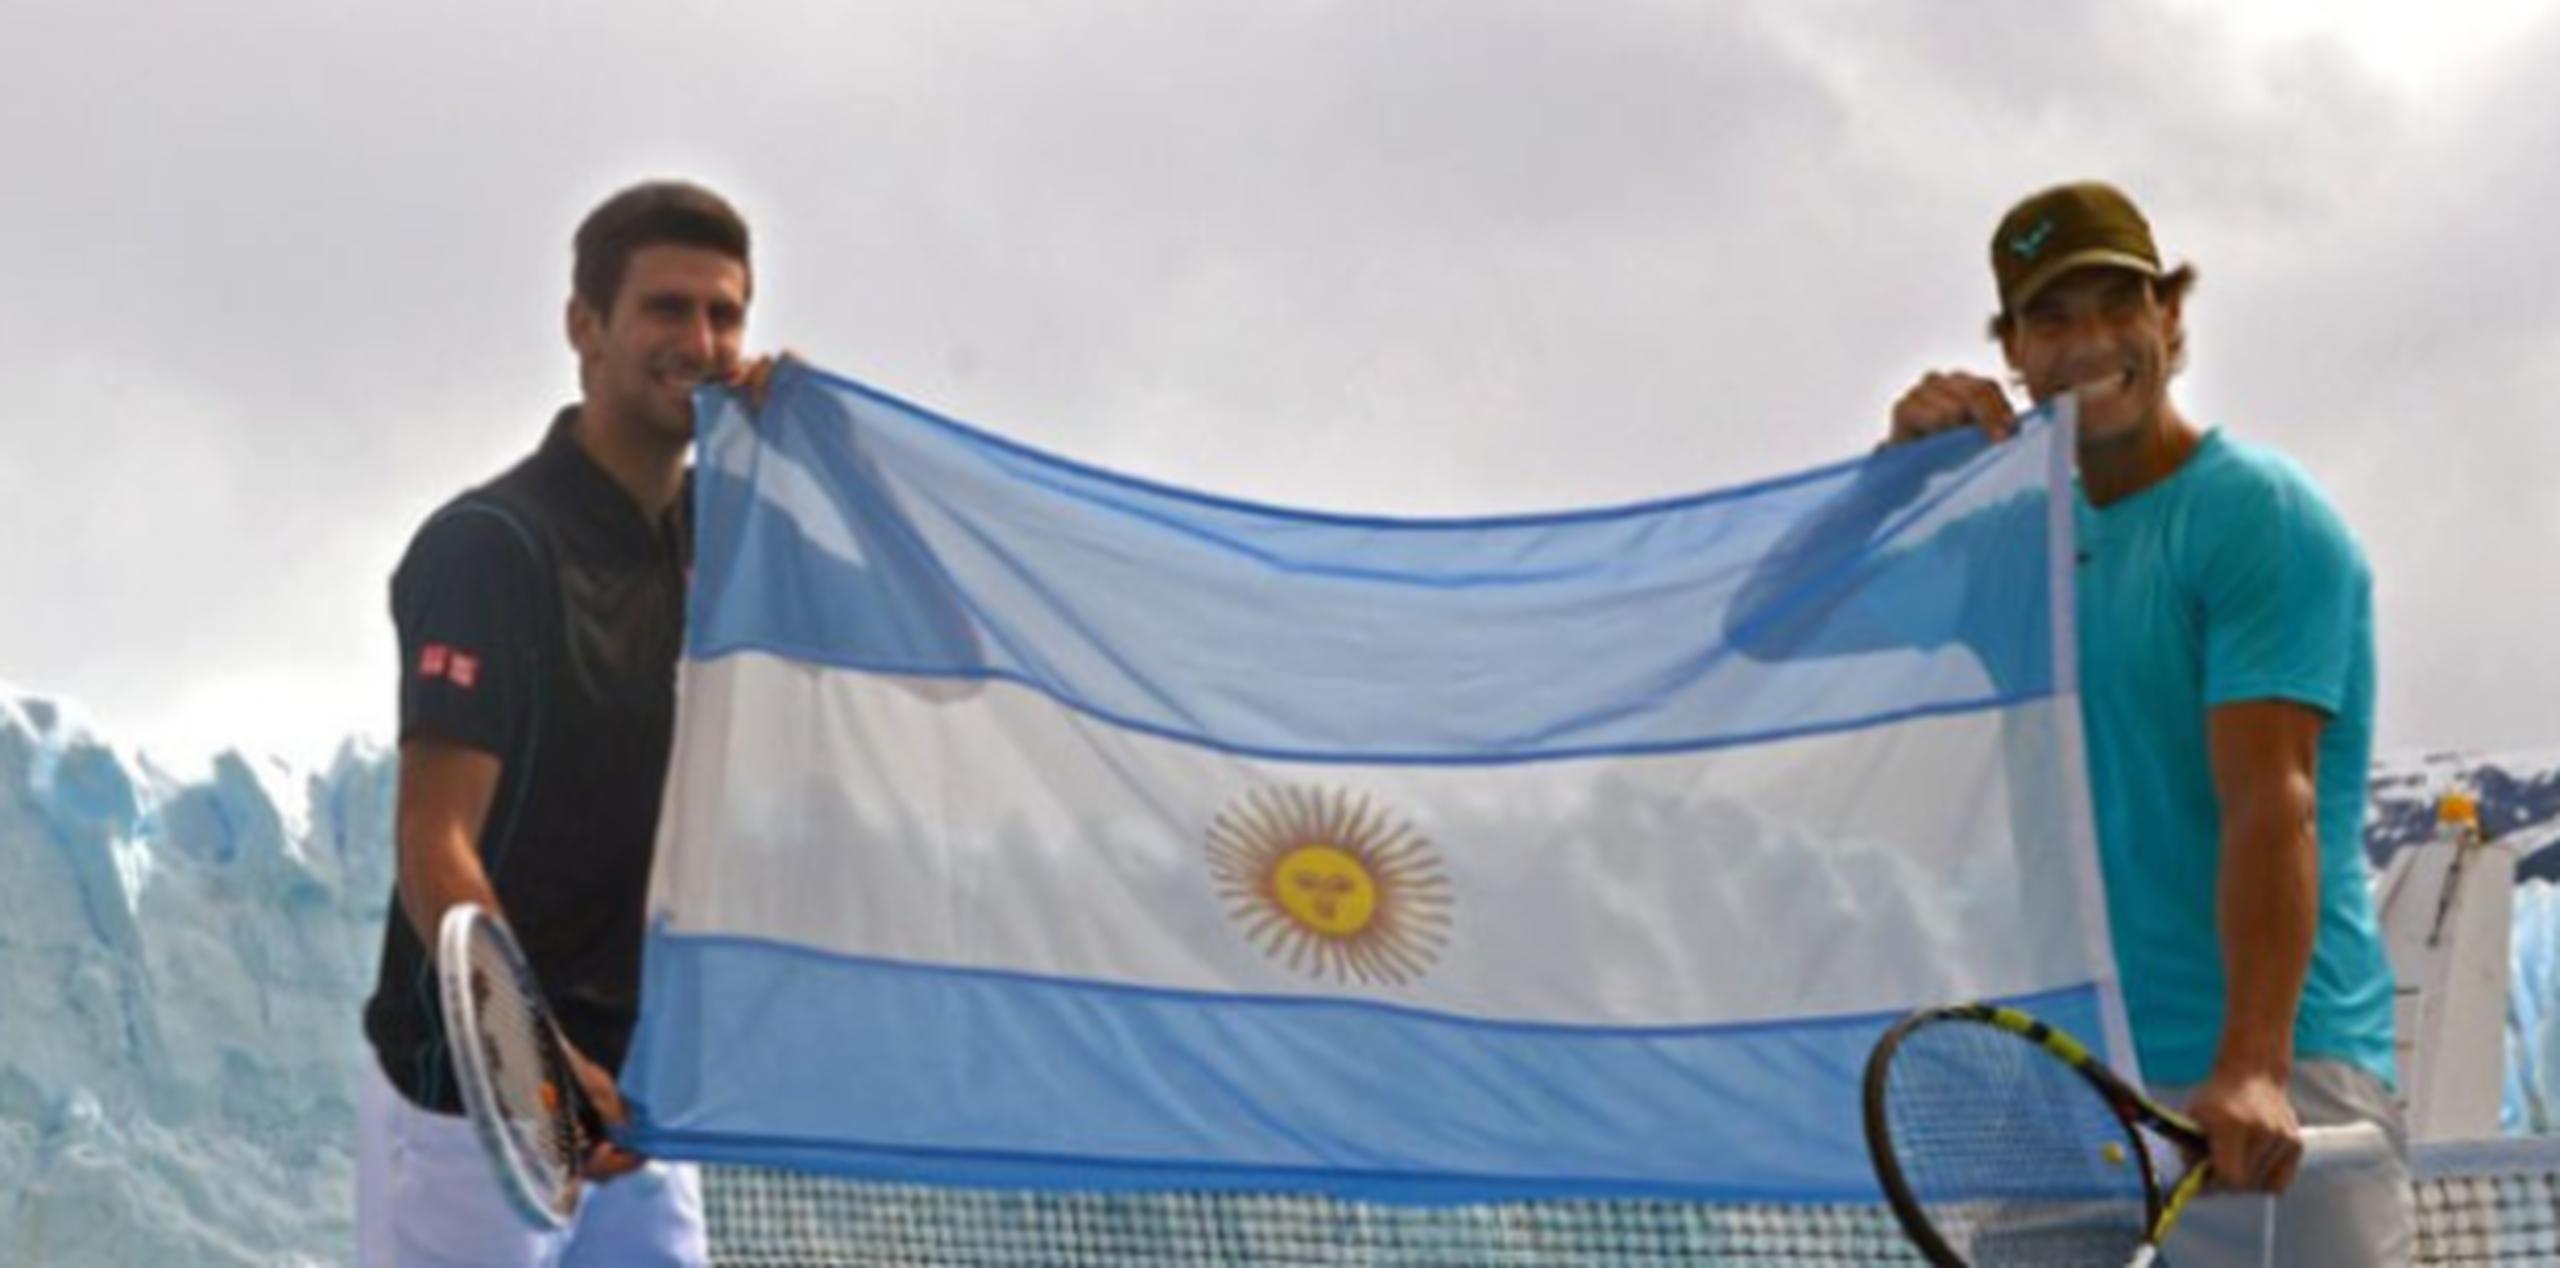 Los dos mejores tenistas del mundo llegaron al país sudamericano para jugar una serie de exhibiciones el fin de semana. (Suministrada)